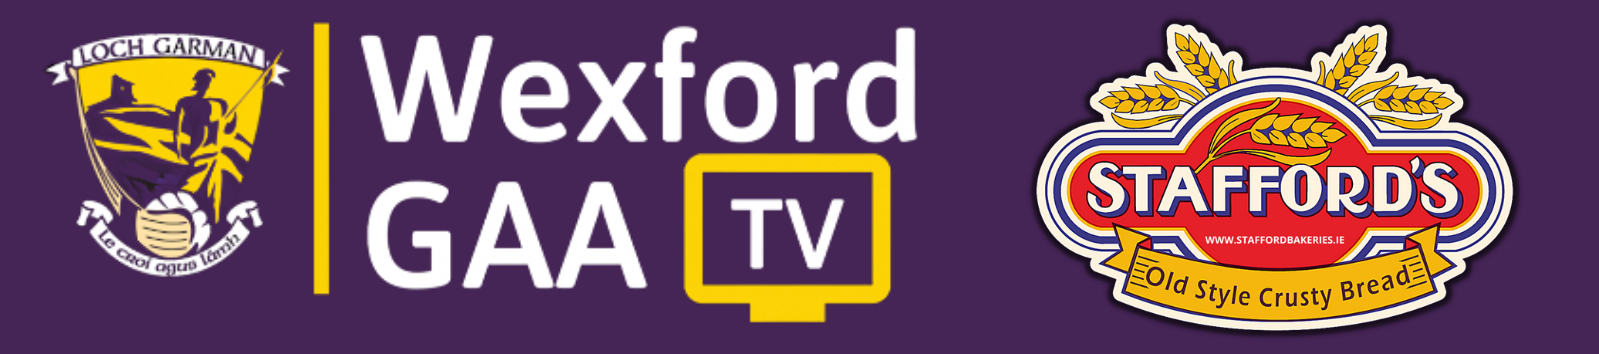 Wexford GAA TV